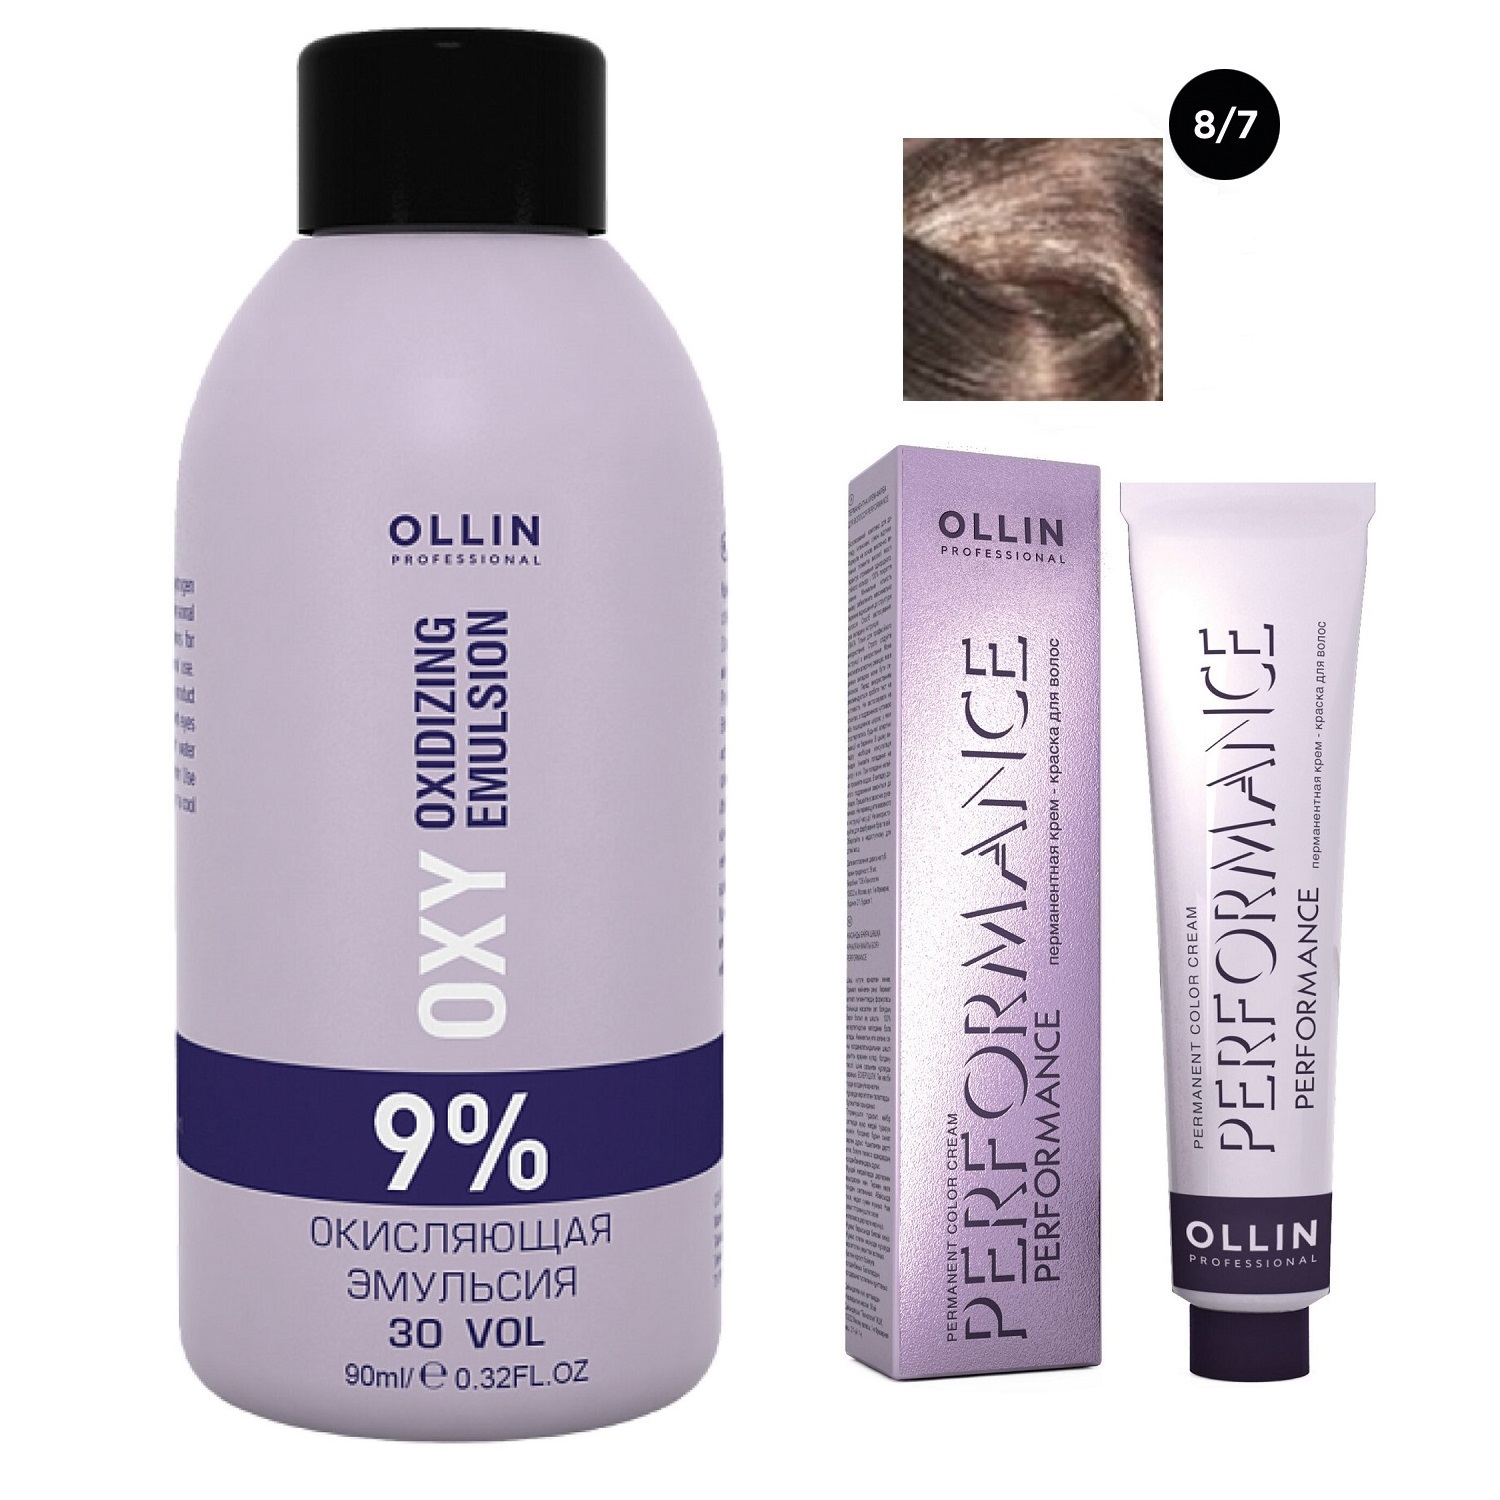 Ollin Professional Набор Перманентная крем-краска для волос Ollin Performance оттенок 8/7 светло-русый коричневый 60 мл + Окисляющая эмульсия Oxy 9% 90 мл (Ollin Professional, Performance)